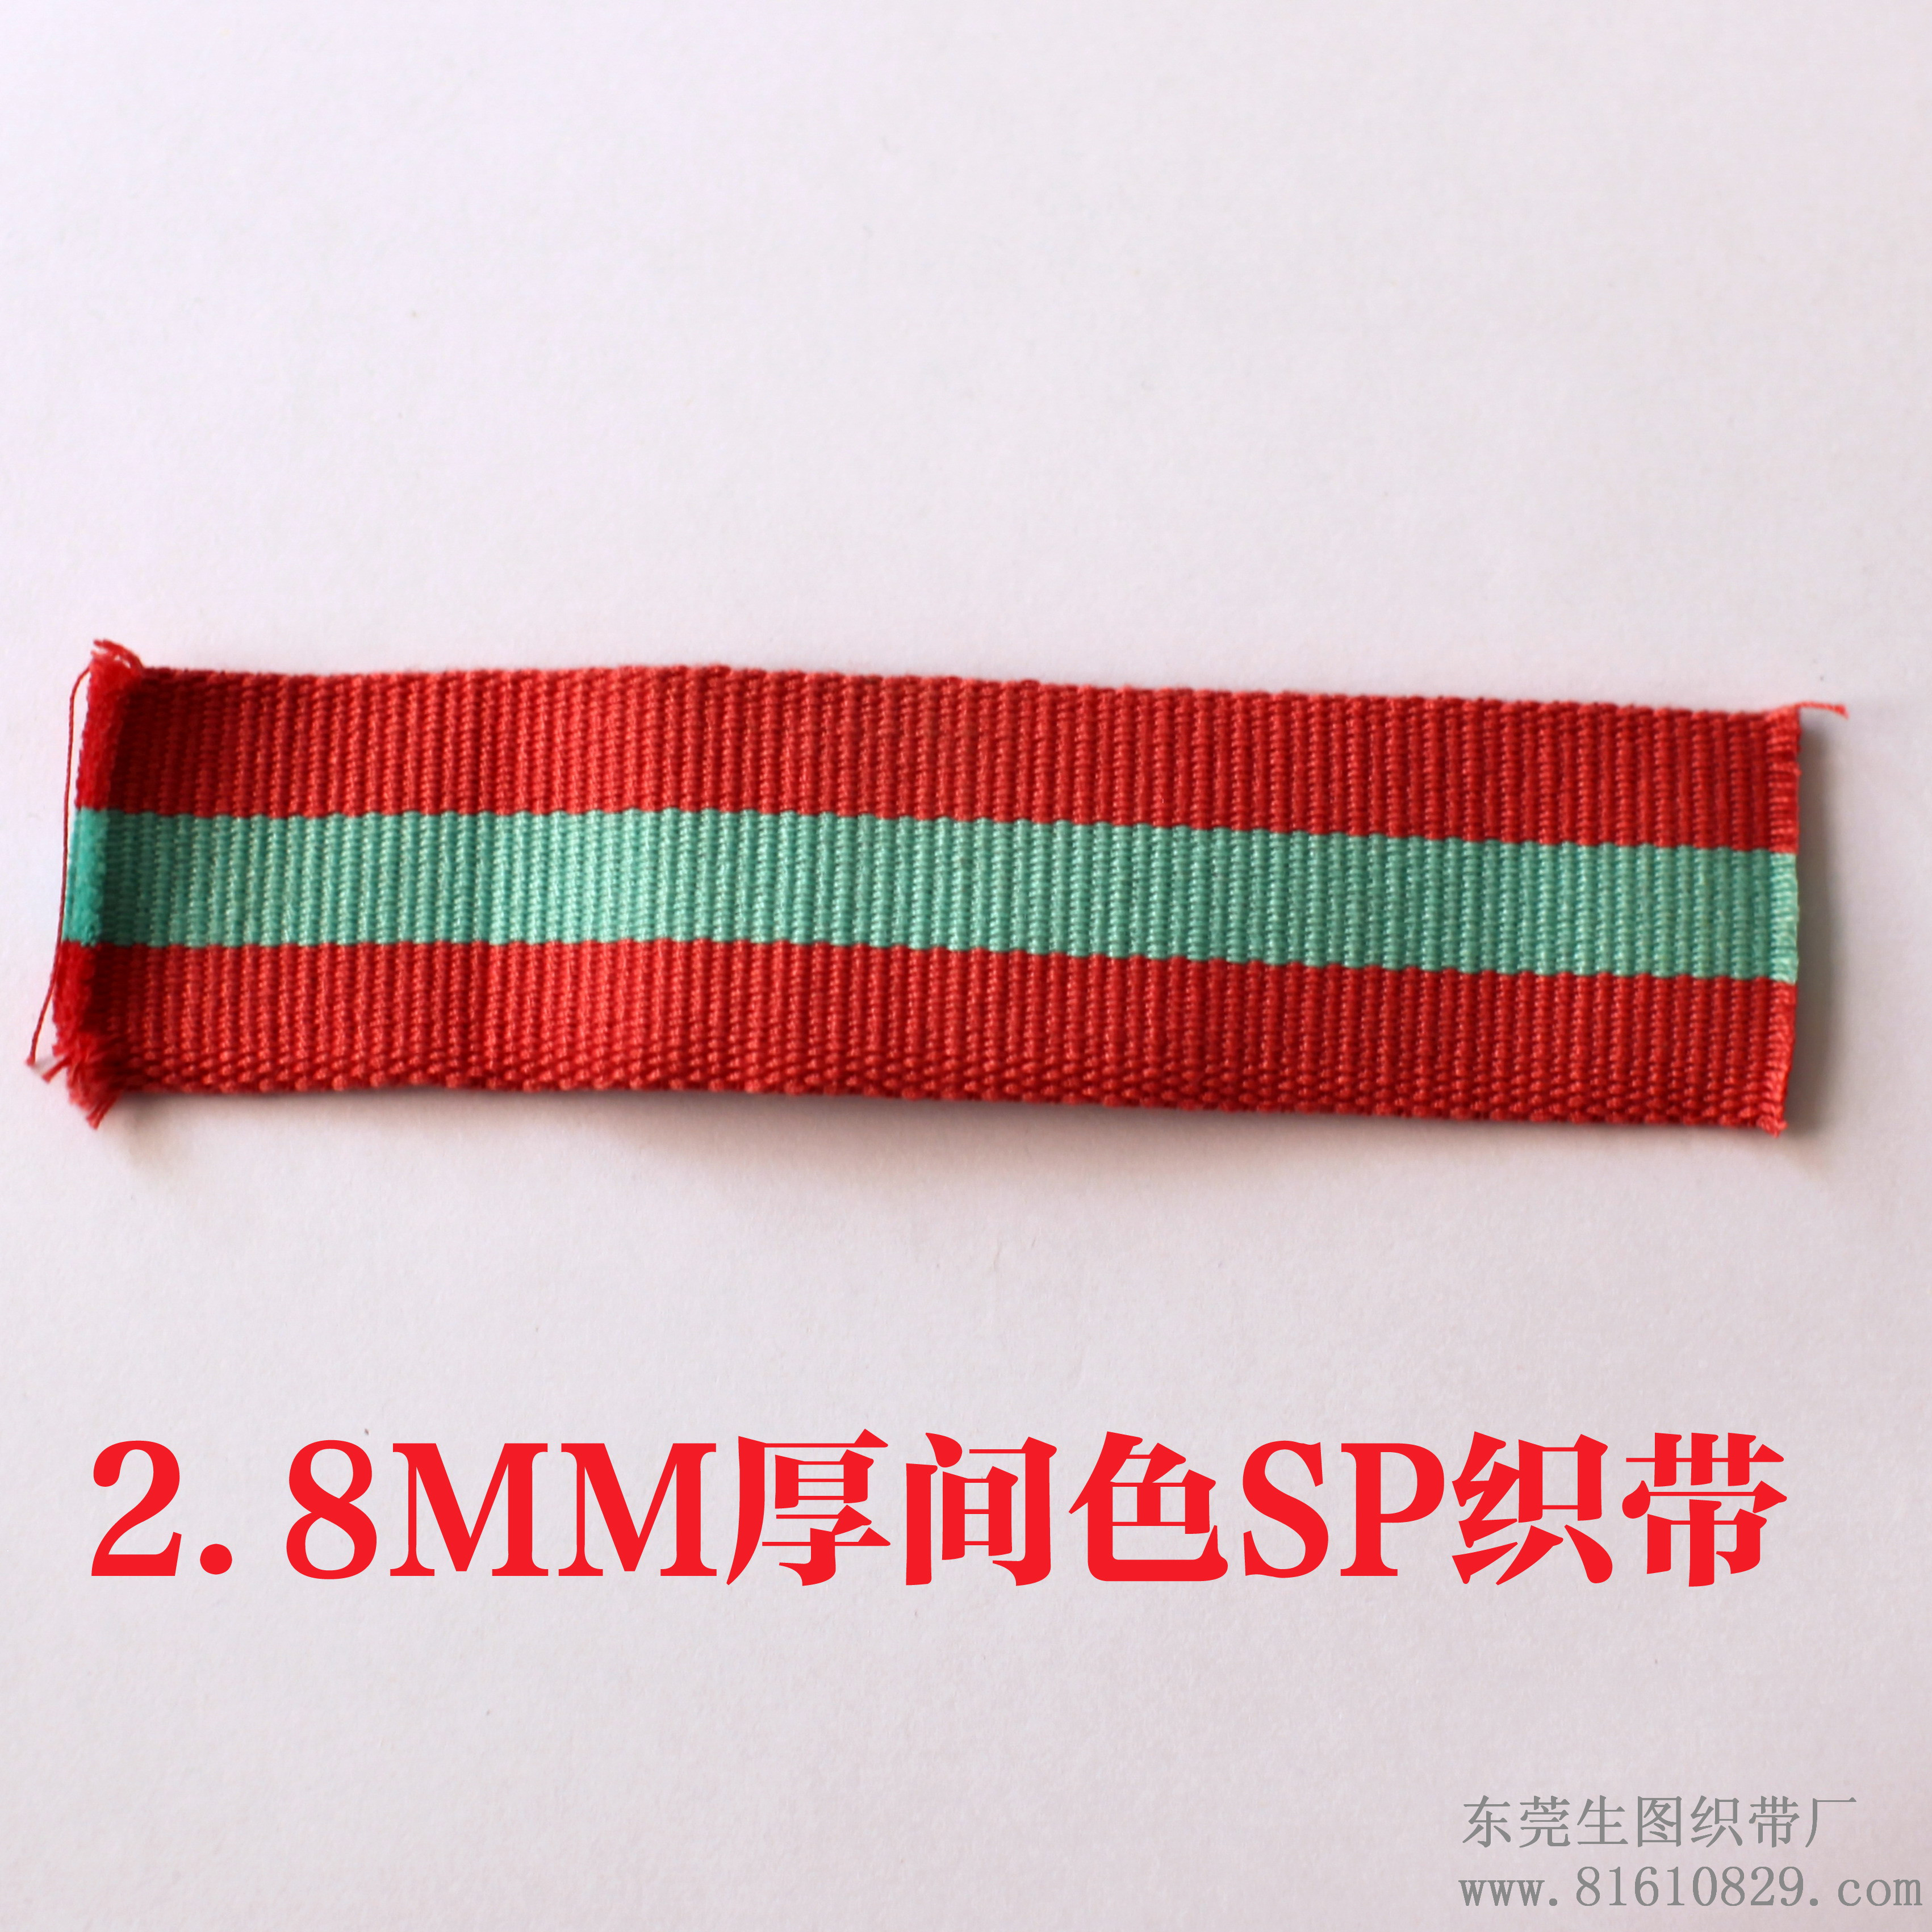 专业订做2.8MM加厚SP线间色织带 服装辅料织带厂家